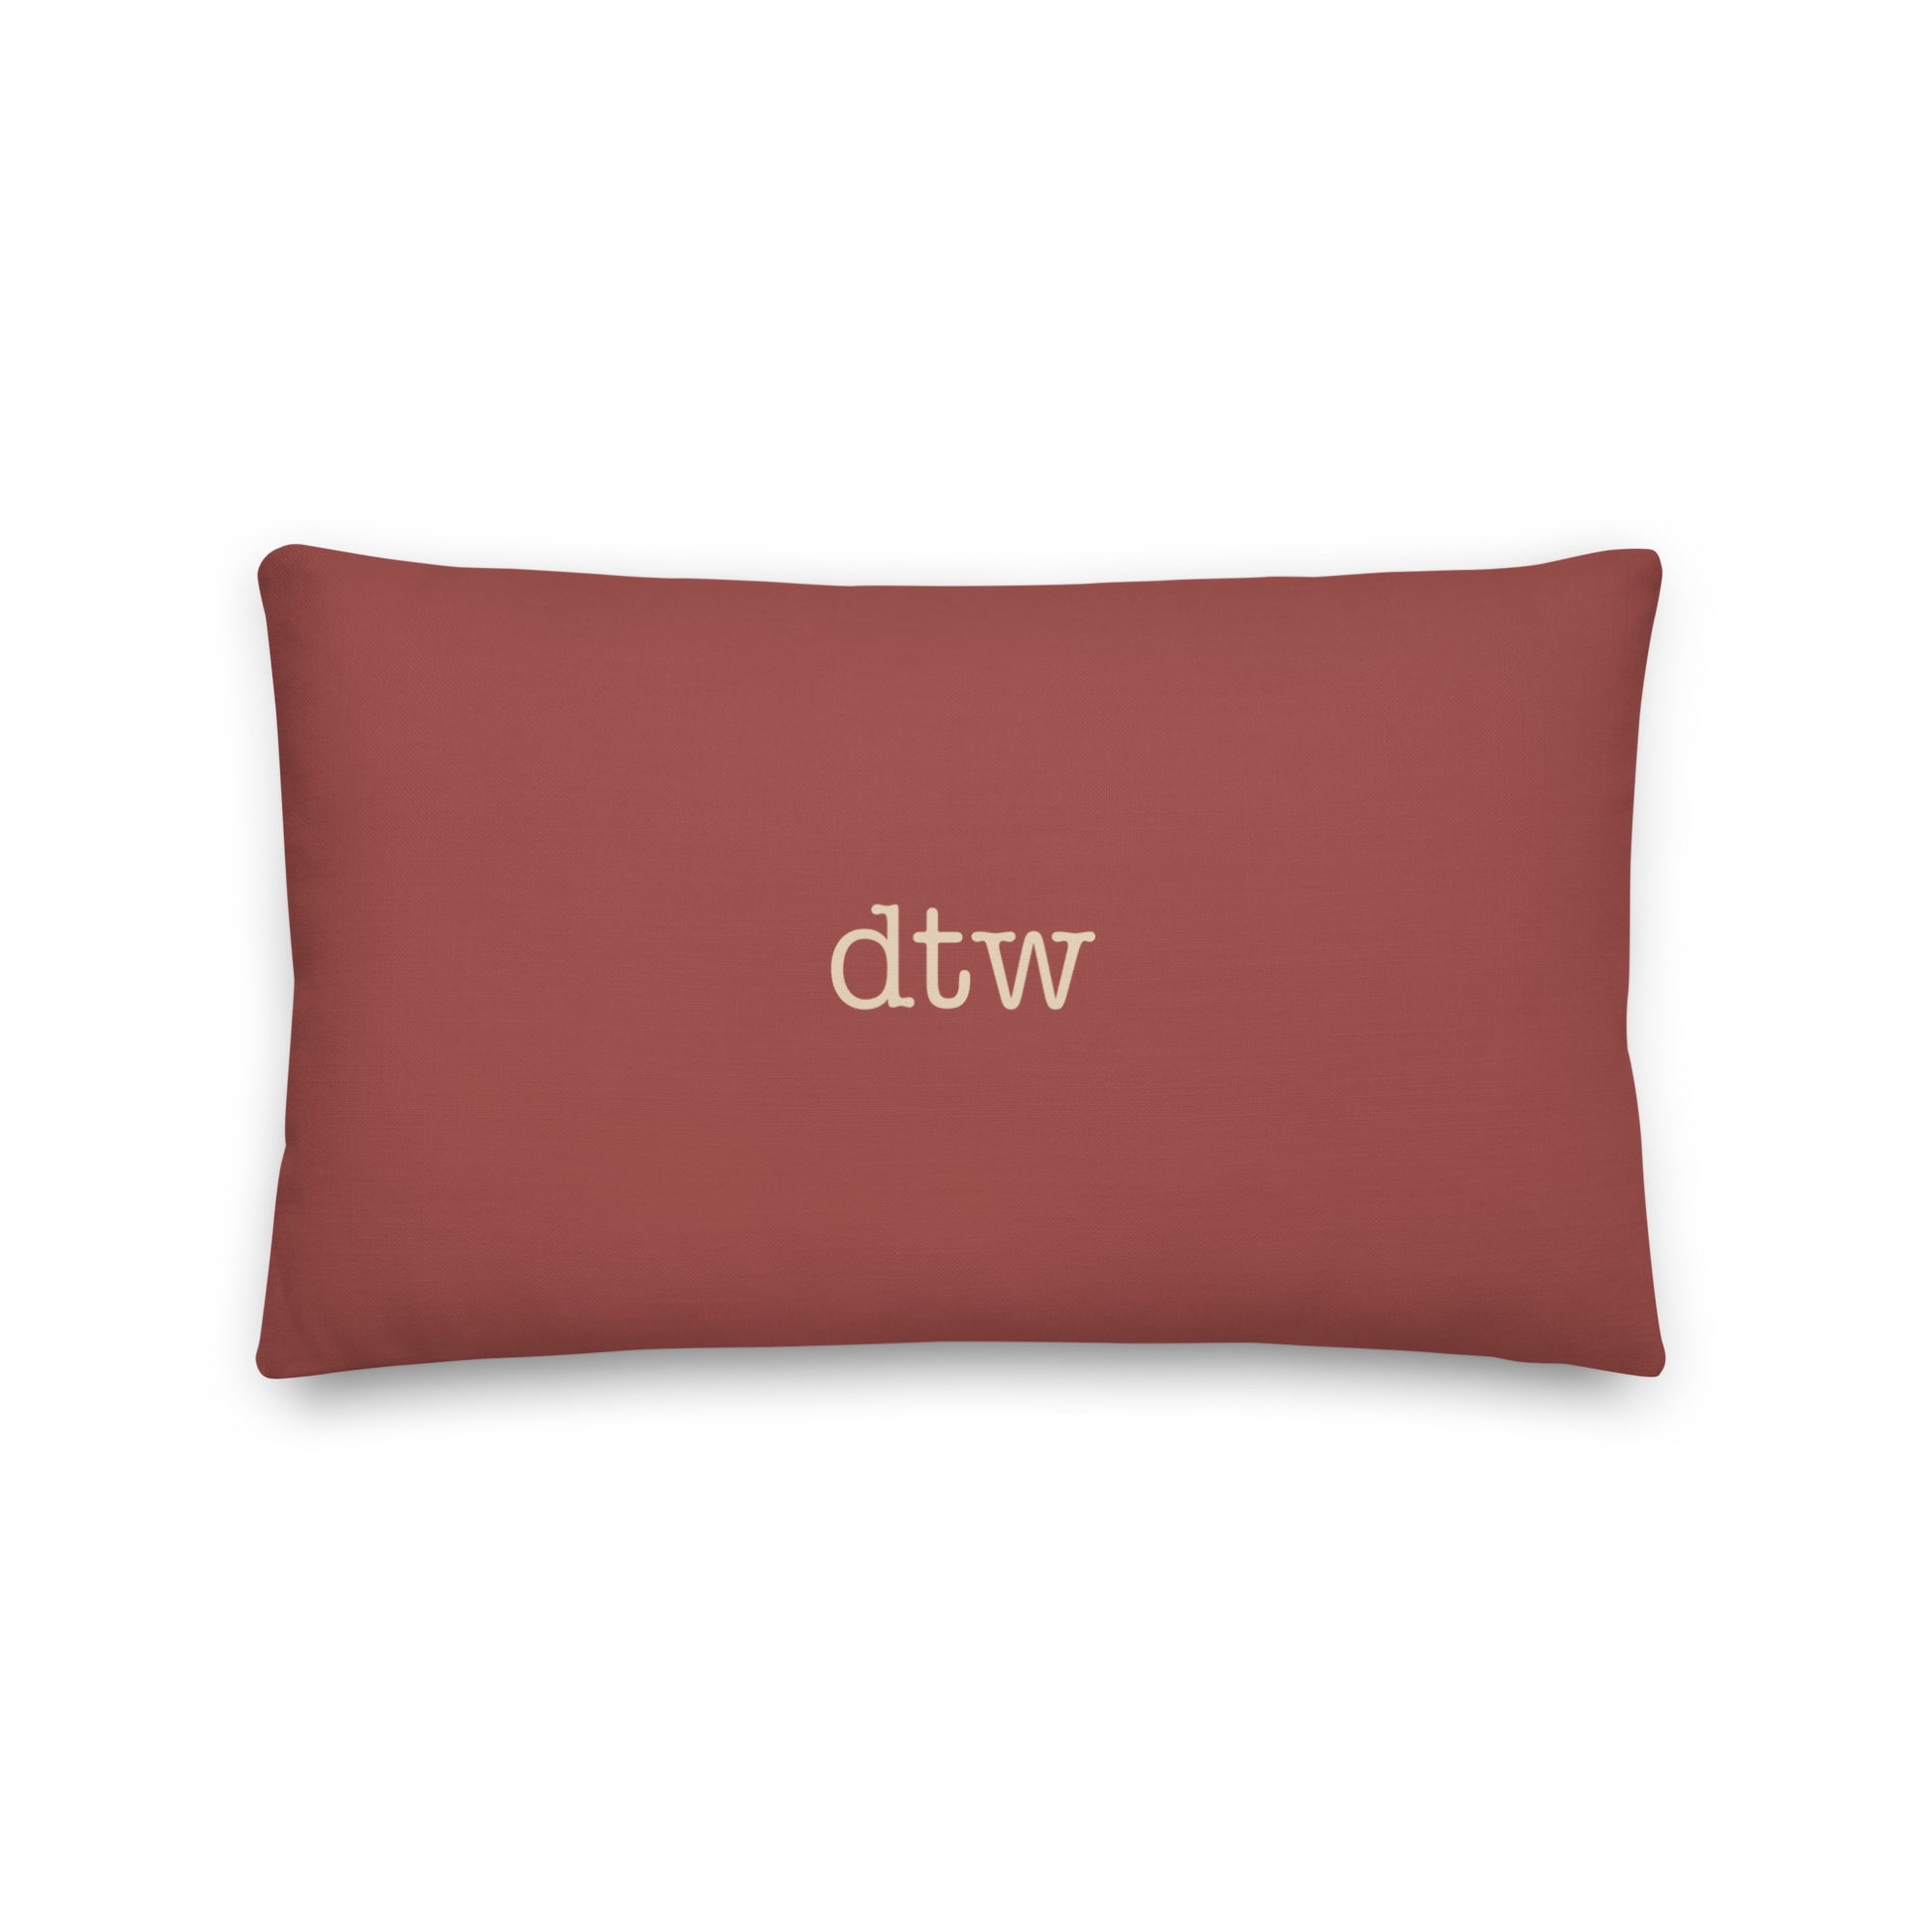 Typewriter Pillow - Terra Cotta • DTW Detroit • YHM Designs - Image 02